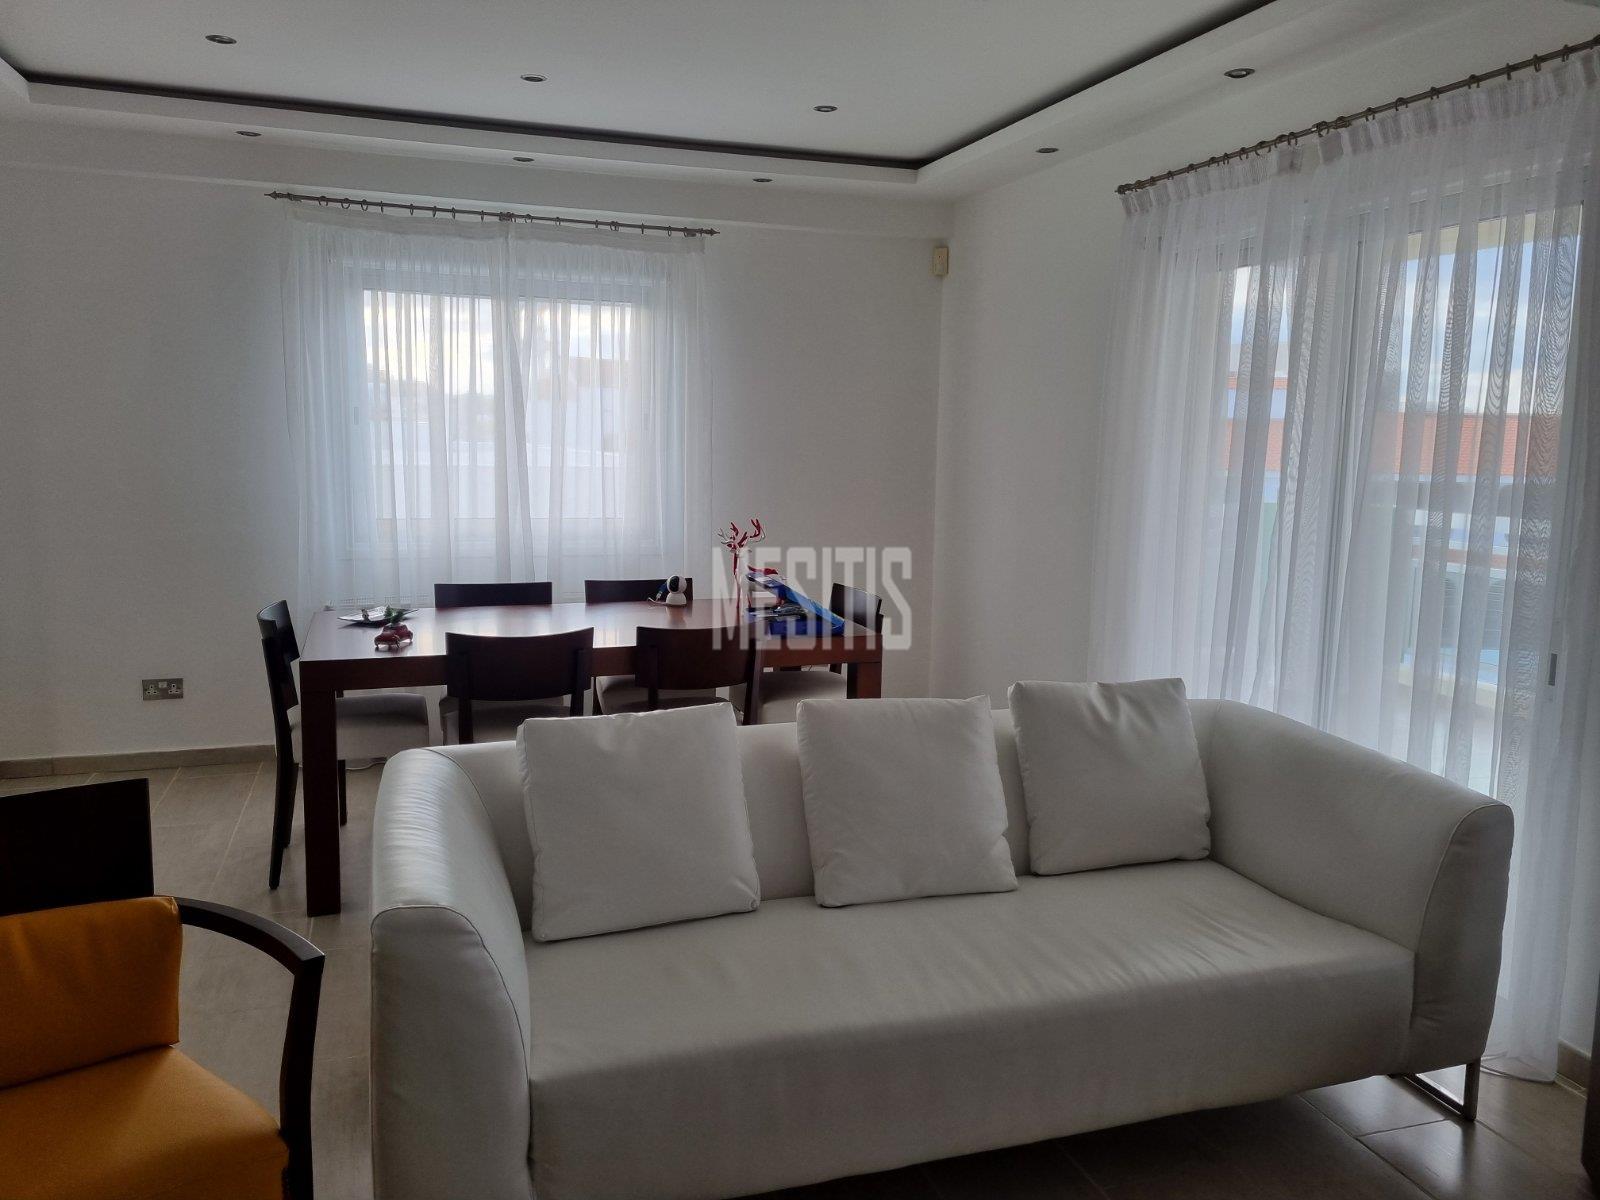 3 Βedroom Τop Floor Apartment For Sale In A Prime Location With Large Spaces And Incredible Aesthetics Αnd Views To All Of Nicosia #30861-2